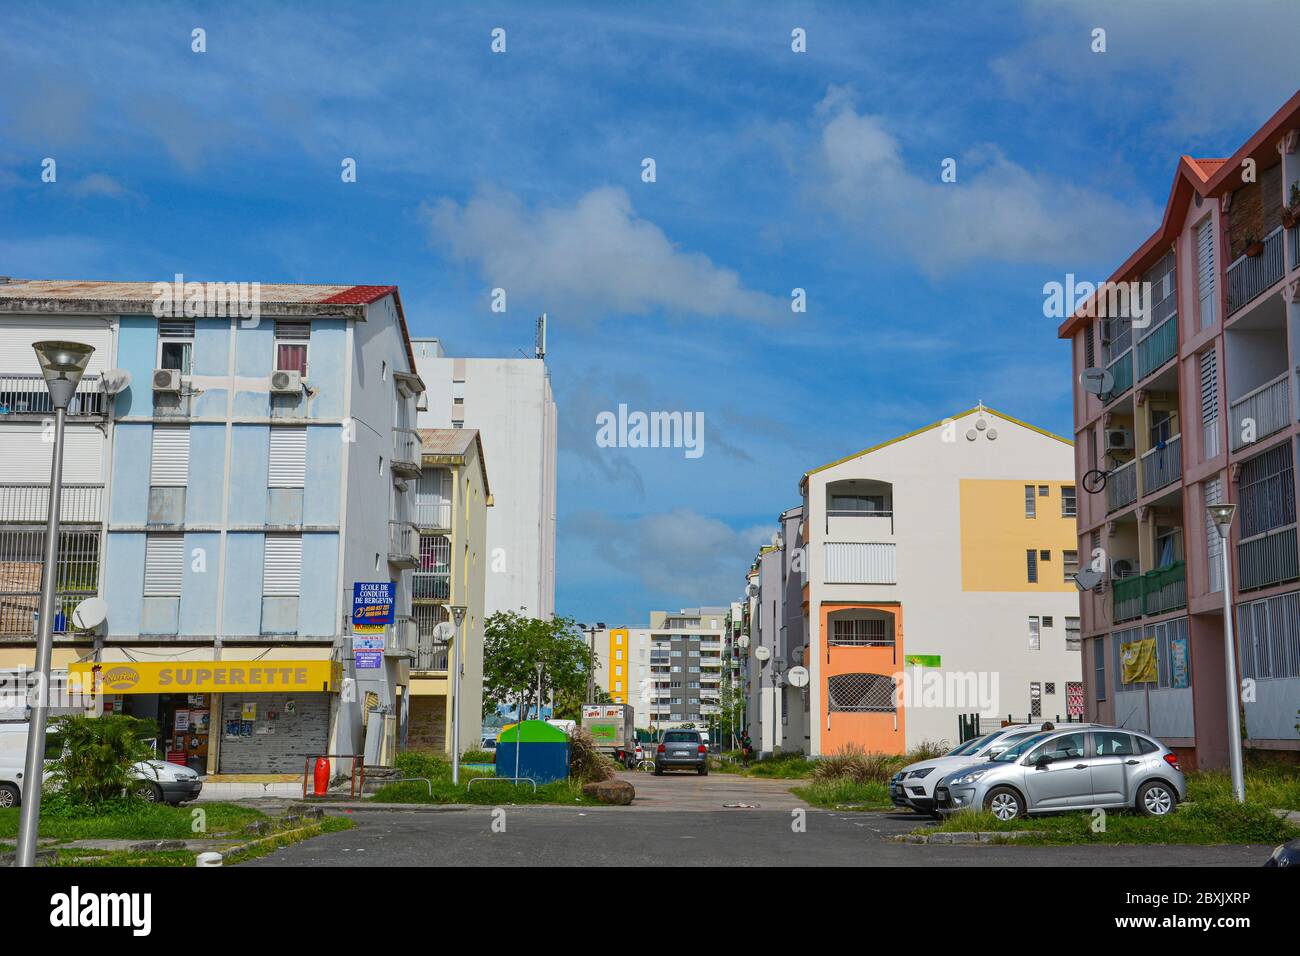 Point-a-Pitre, Guadeloupe - 17 sept. 2018: Rue avec immeubles modernes et colorés, une boutique et des voitures garées en Guadeloupe. Copier l'espace Banque D'Images